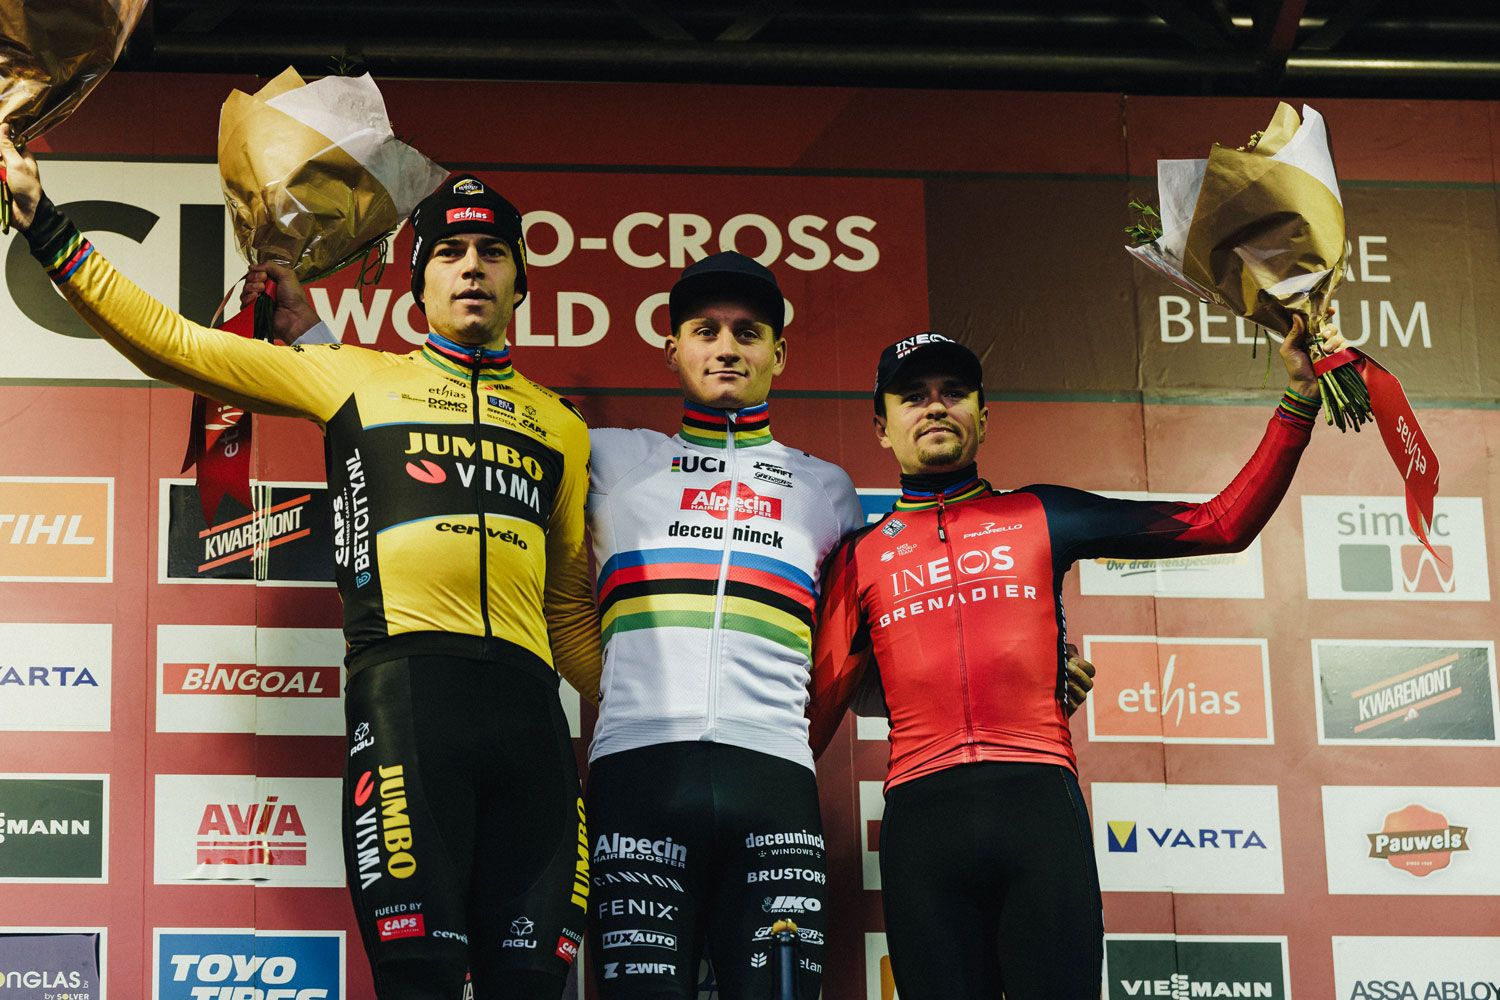 El podio de la Copa del Mundo de Ciclocross UCI de Gavere. De izquierda a derecha: Wout van Aert, Mathieu Van der Poel y Tom Pidcock.